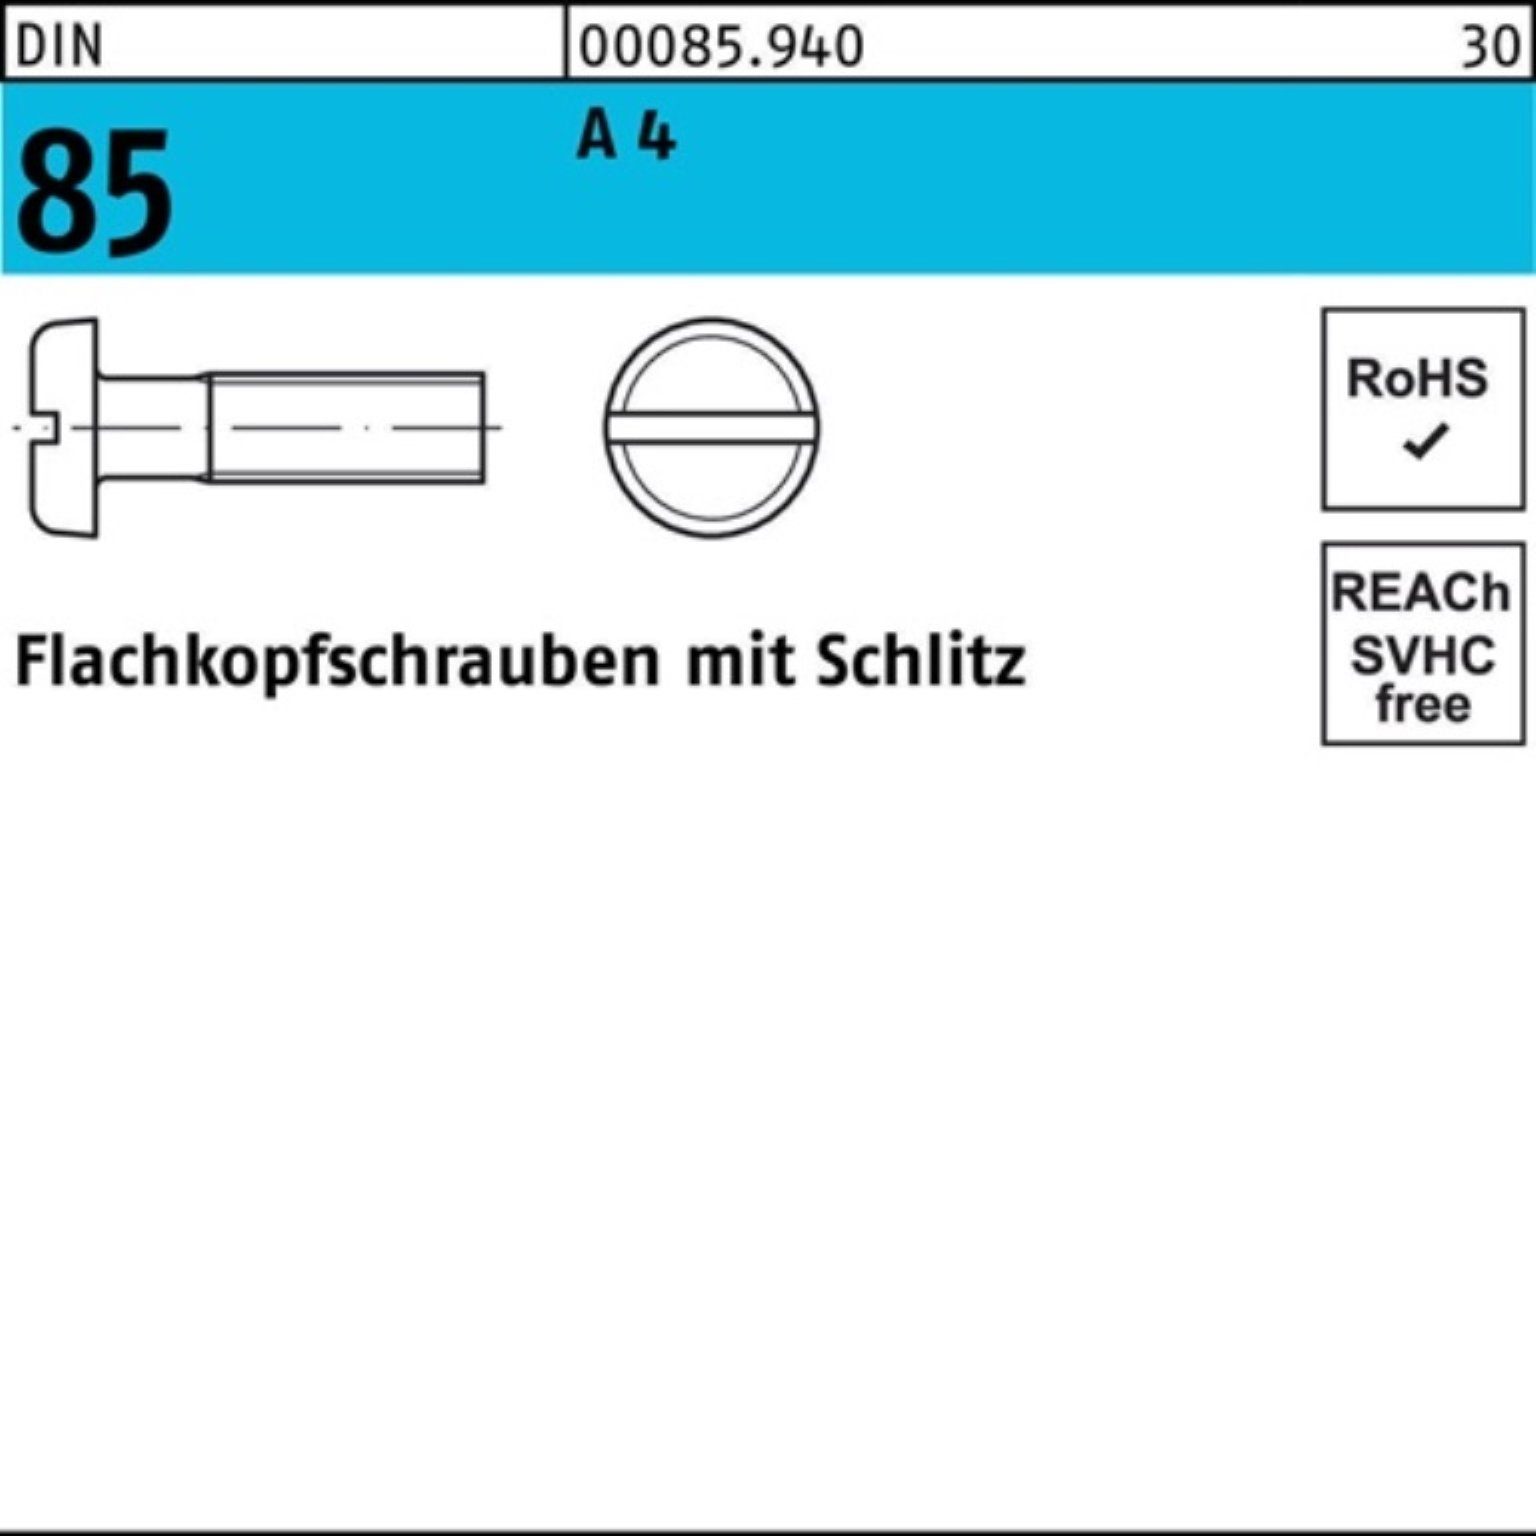 Pack 1000 1580 1000er 10 M2x Flachkopfschraube DIN 4 Reyher Schraube 85/ISO A Schlitz